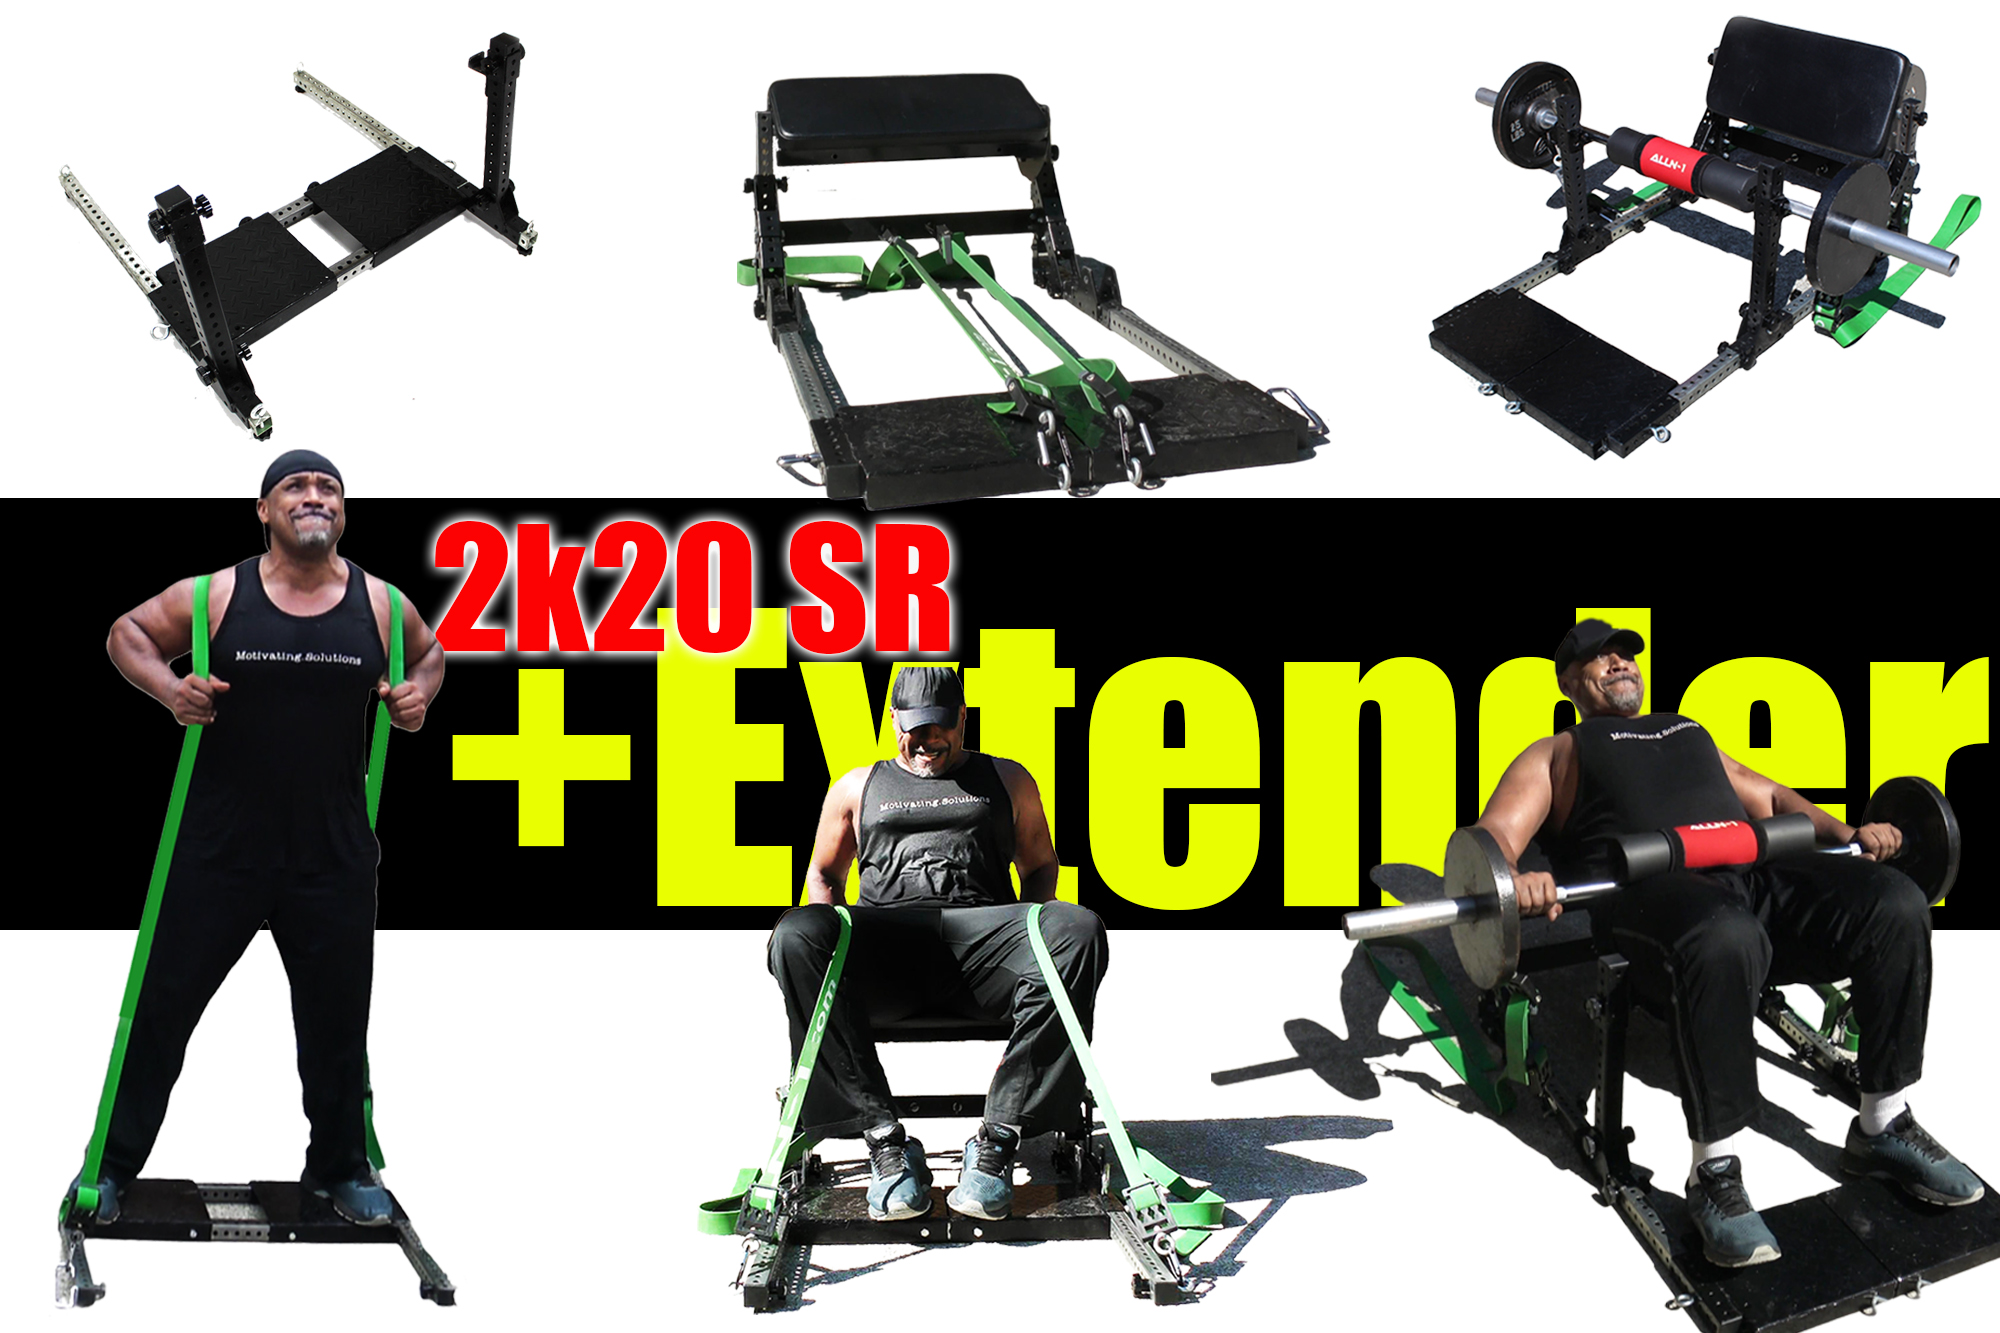 ALLN-1: Functional Fitness Bench 2k20 SR Edt.